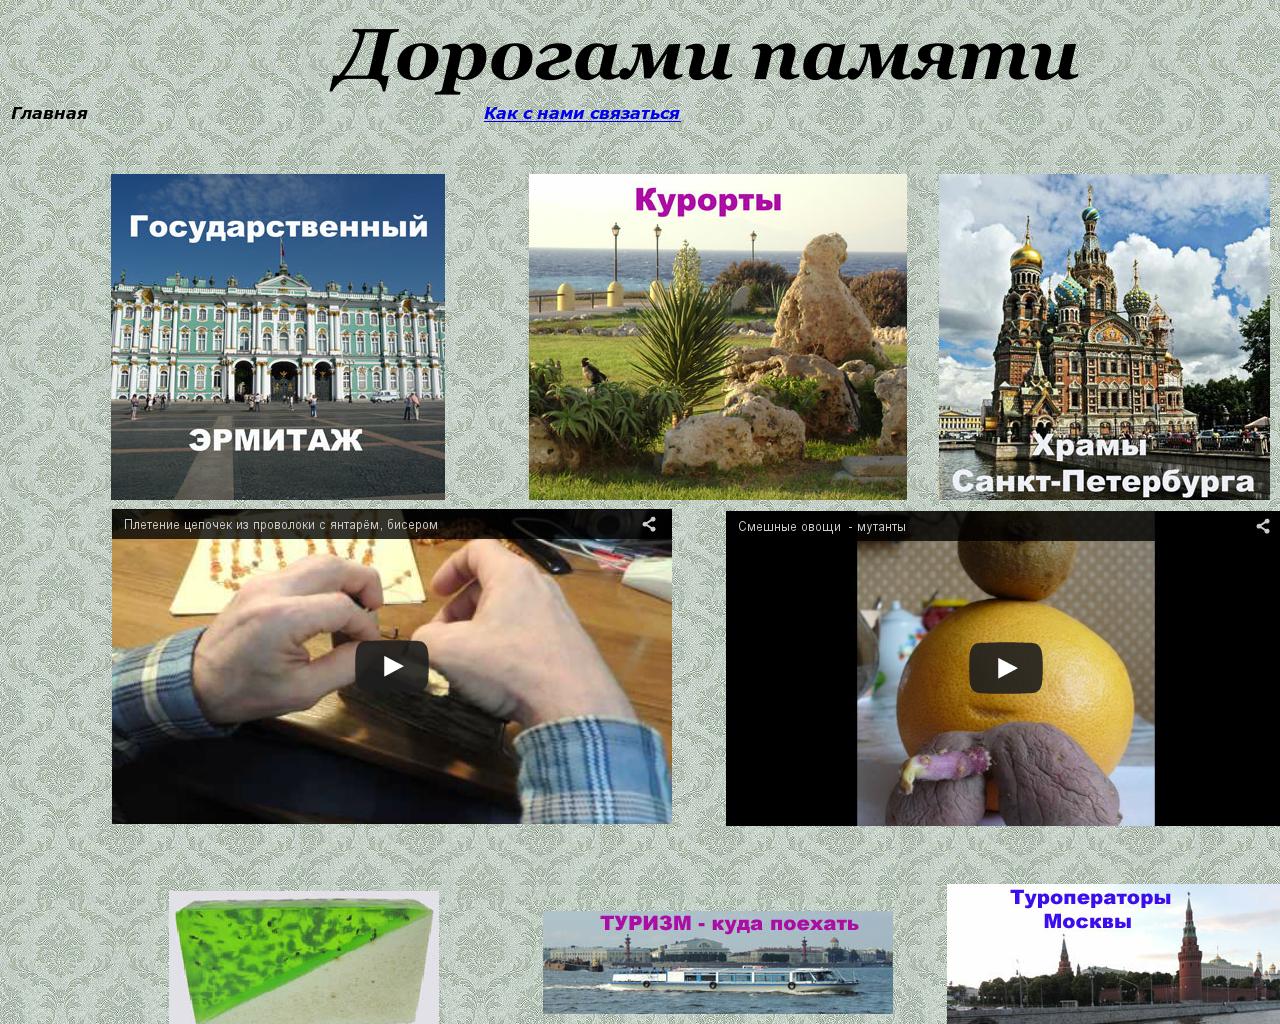 Изображение сайта dorpam.ru в разрешении 1280x1024